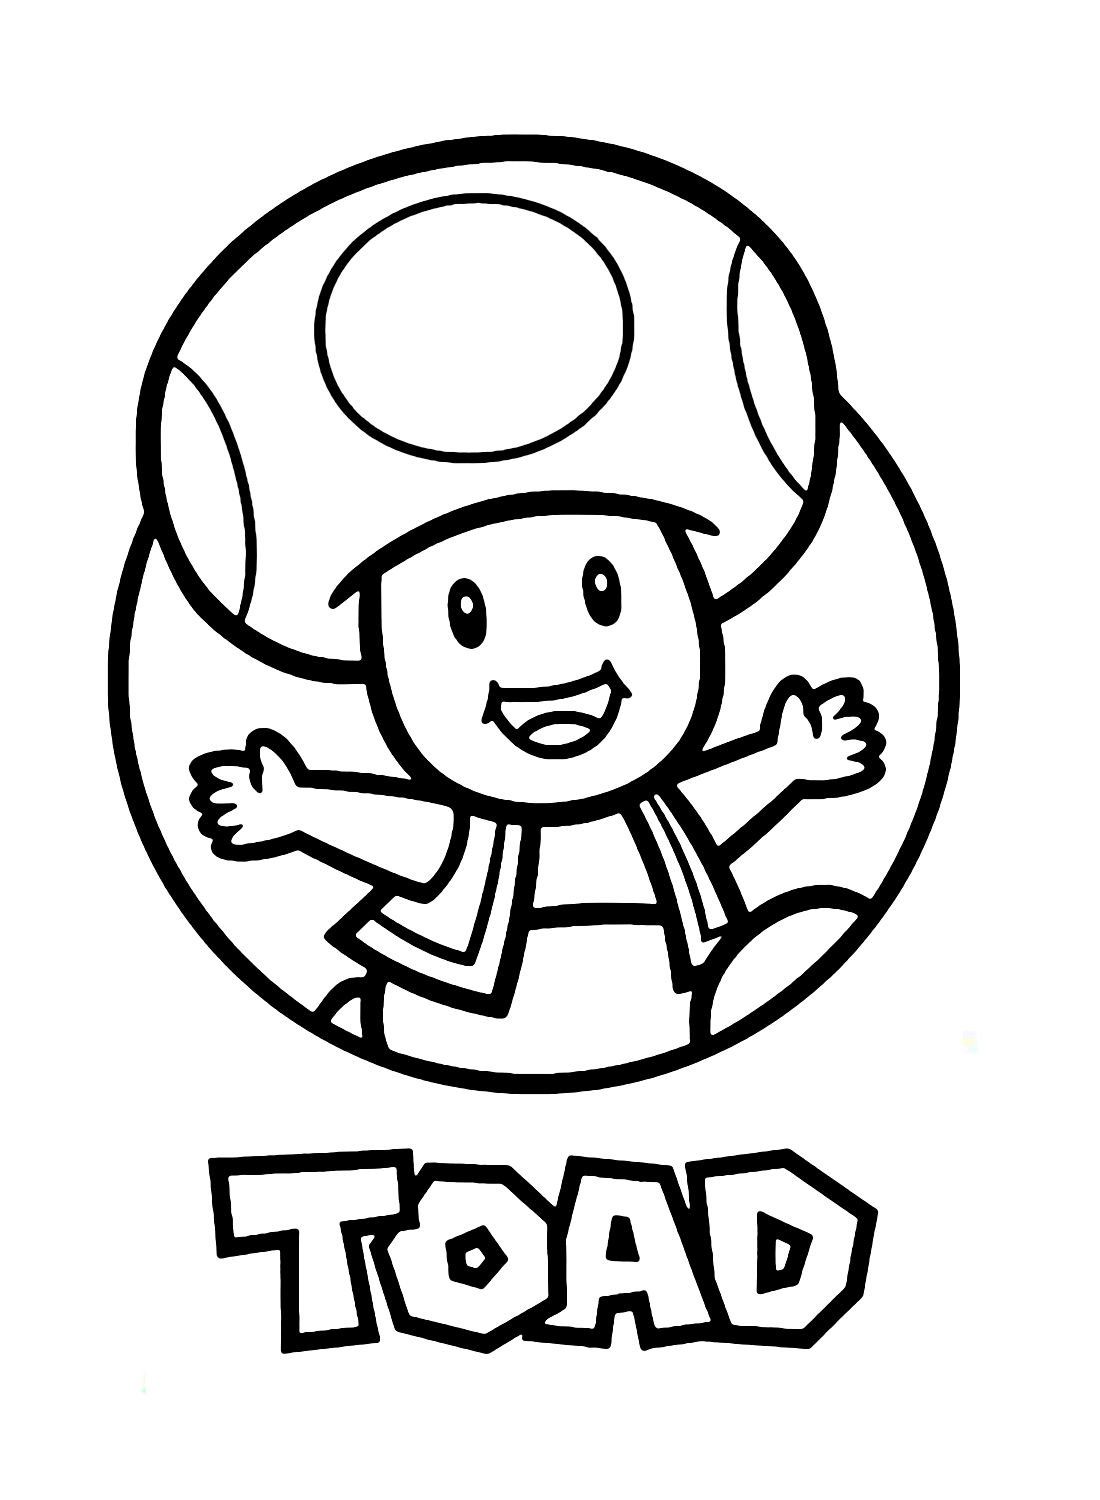 Toad Super Mario van Toad Mario